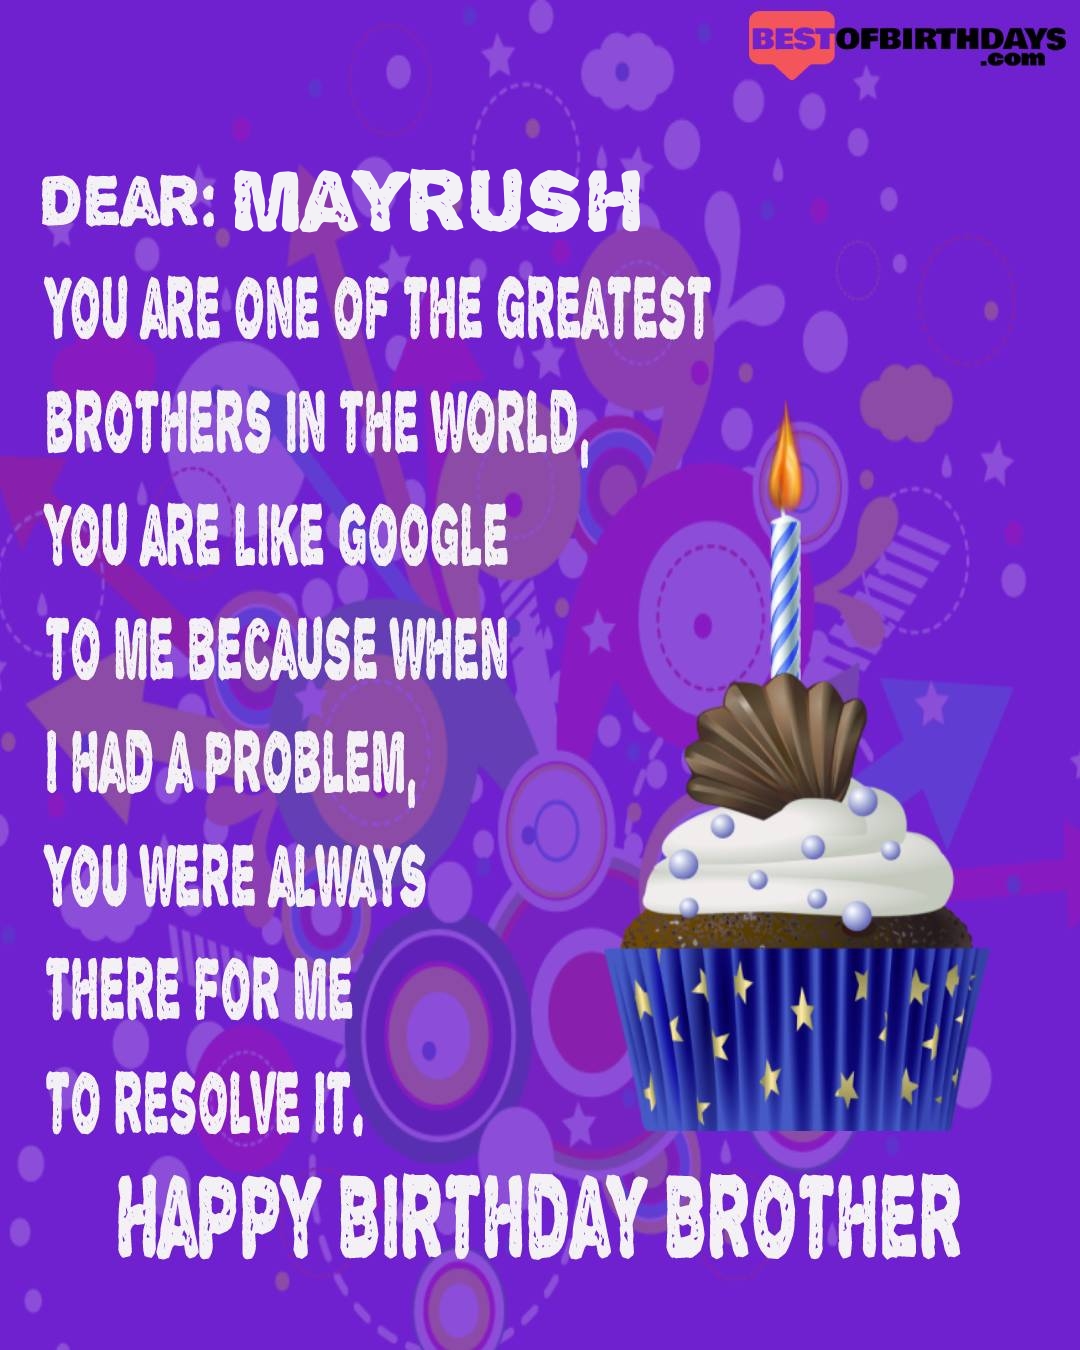 Happy birthday mayrush bhai brother bro